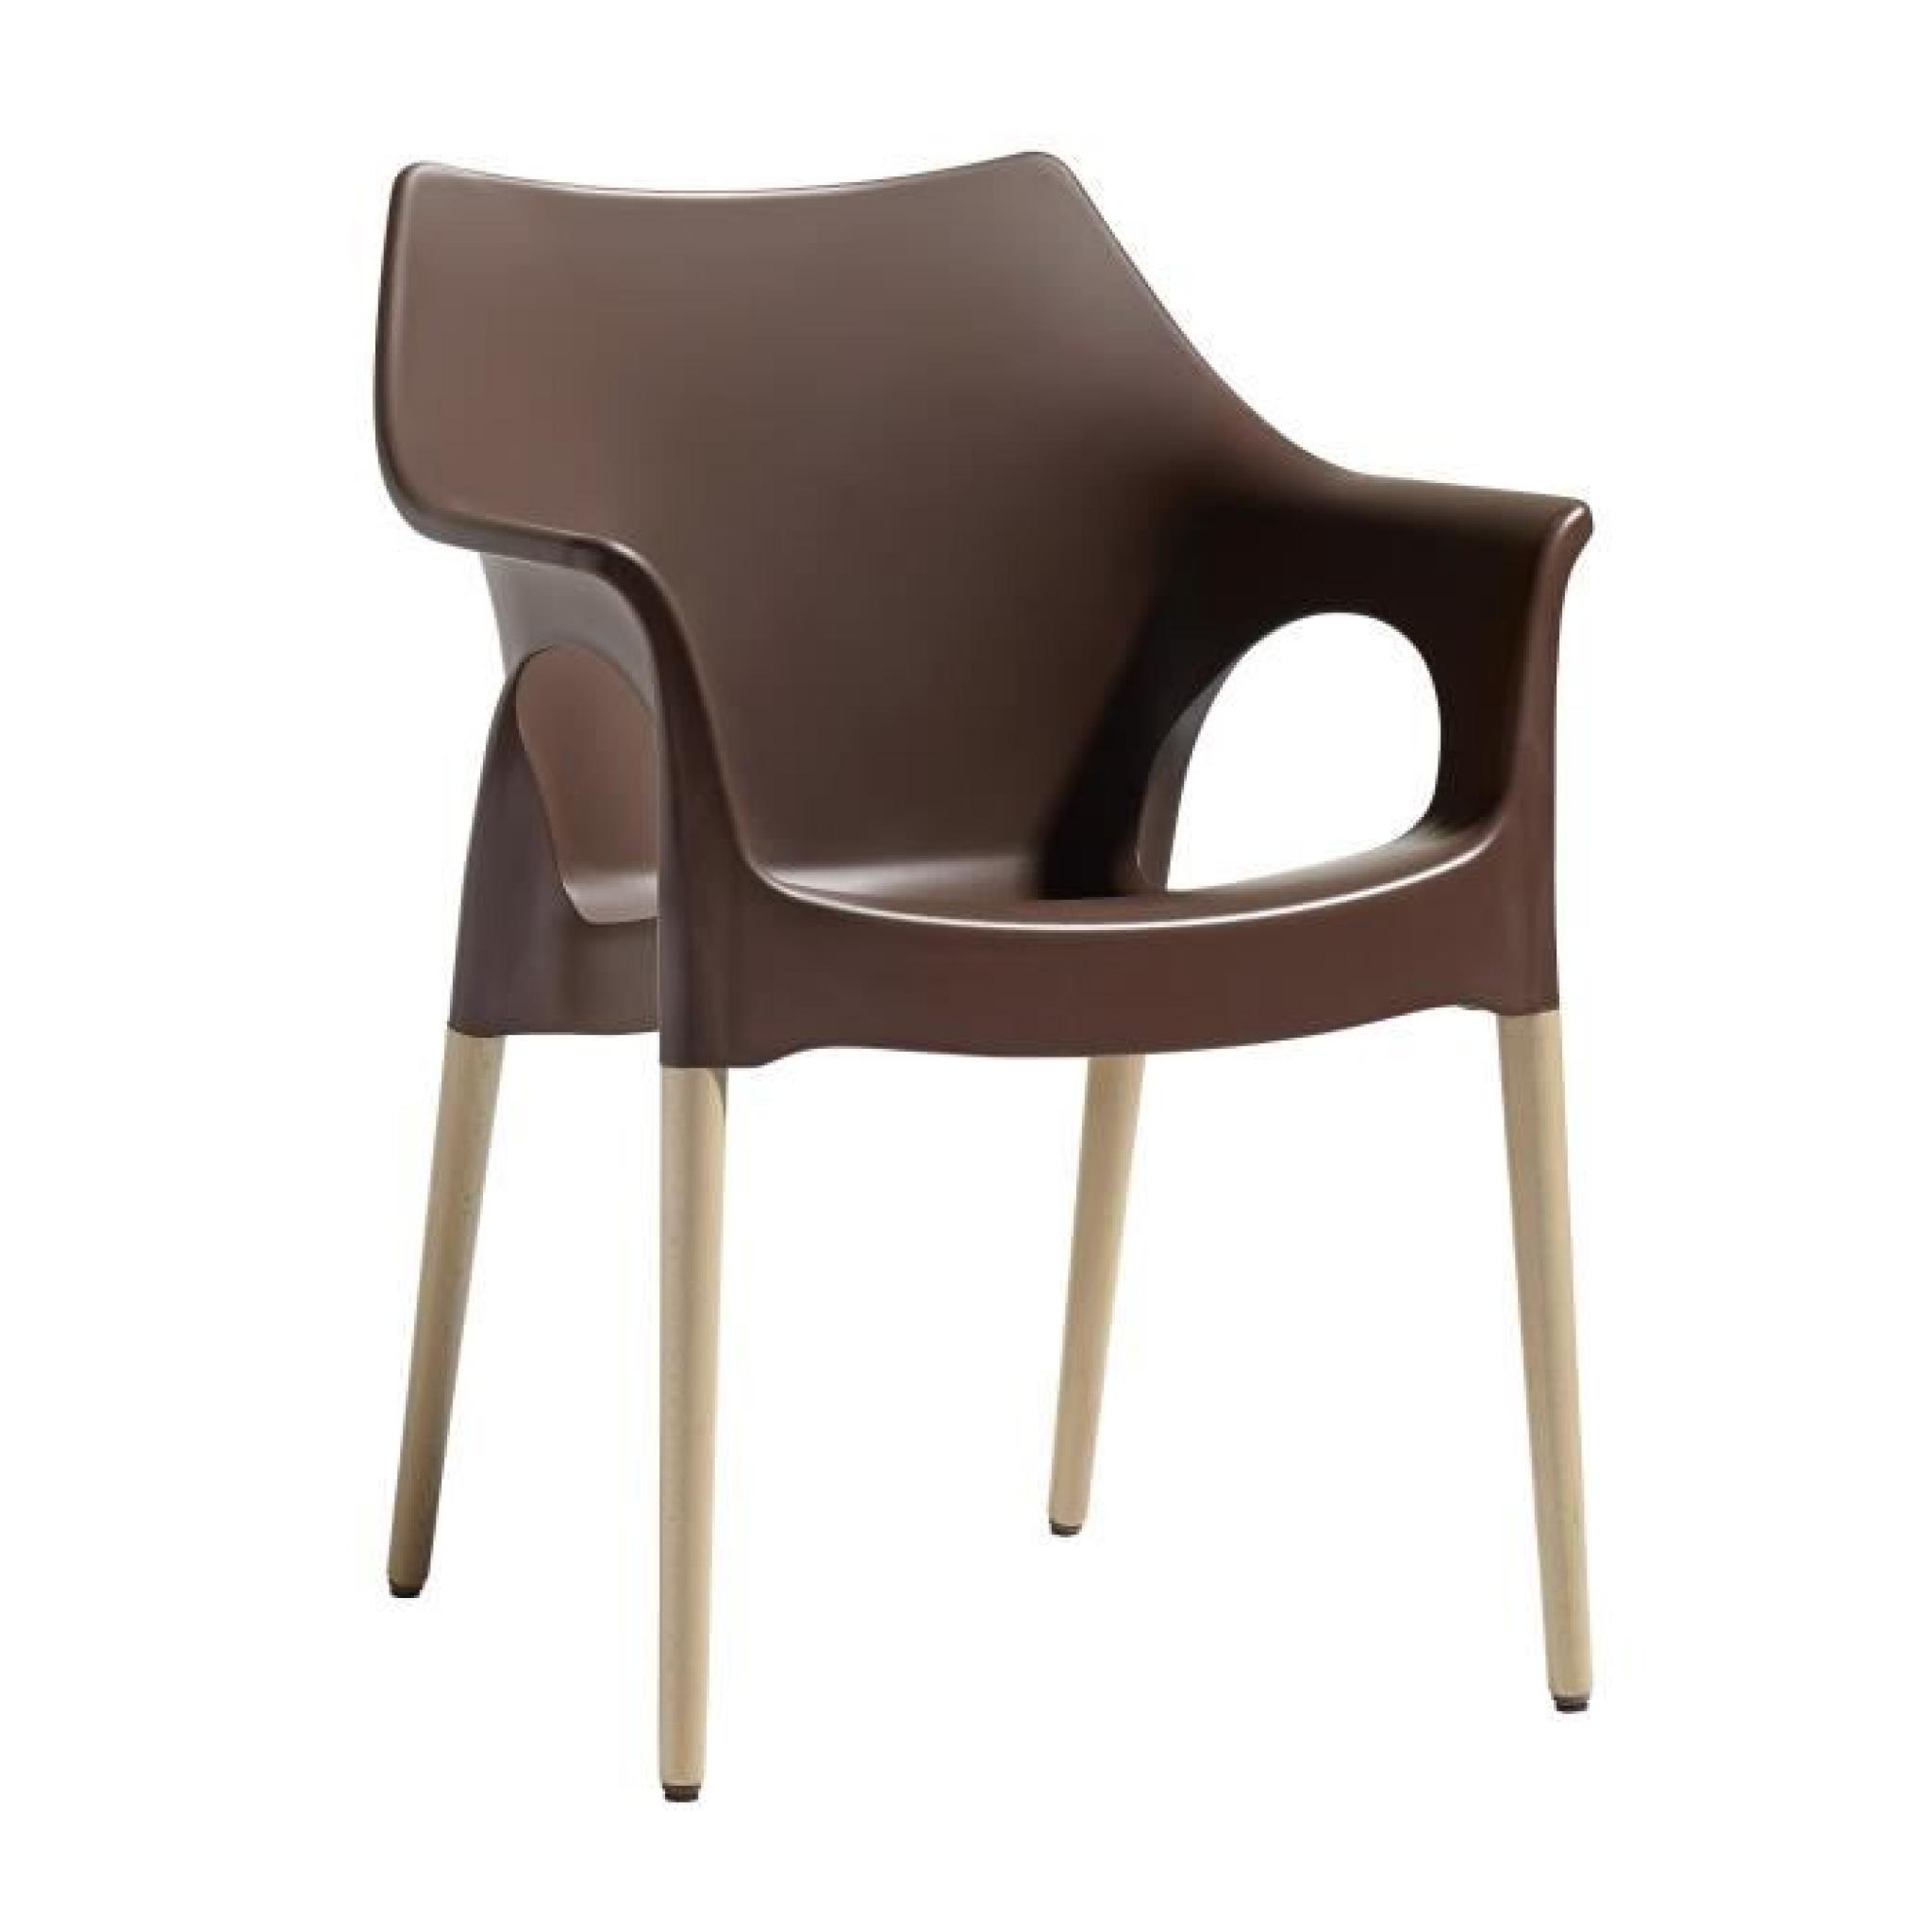 Chaise avec pieds bois naturel - NATURA OLA - vendu à l'unité - déco